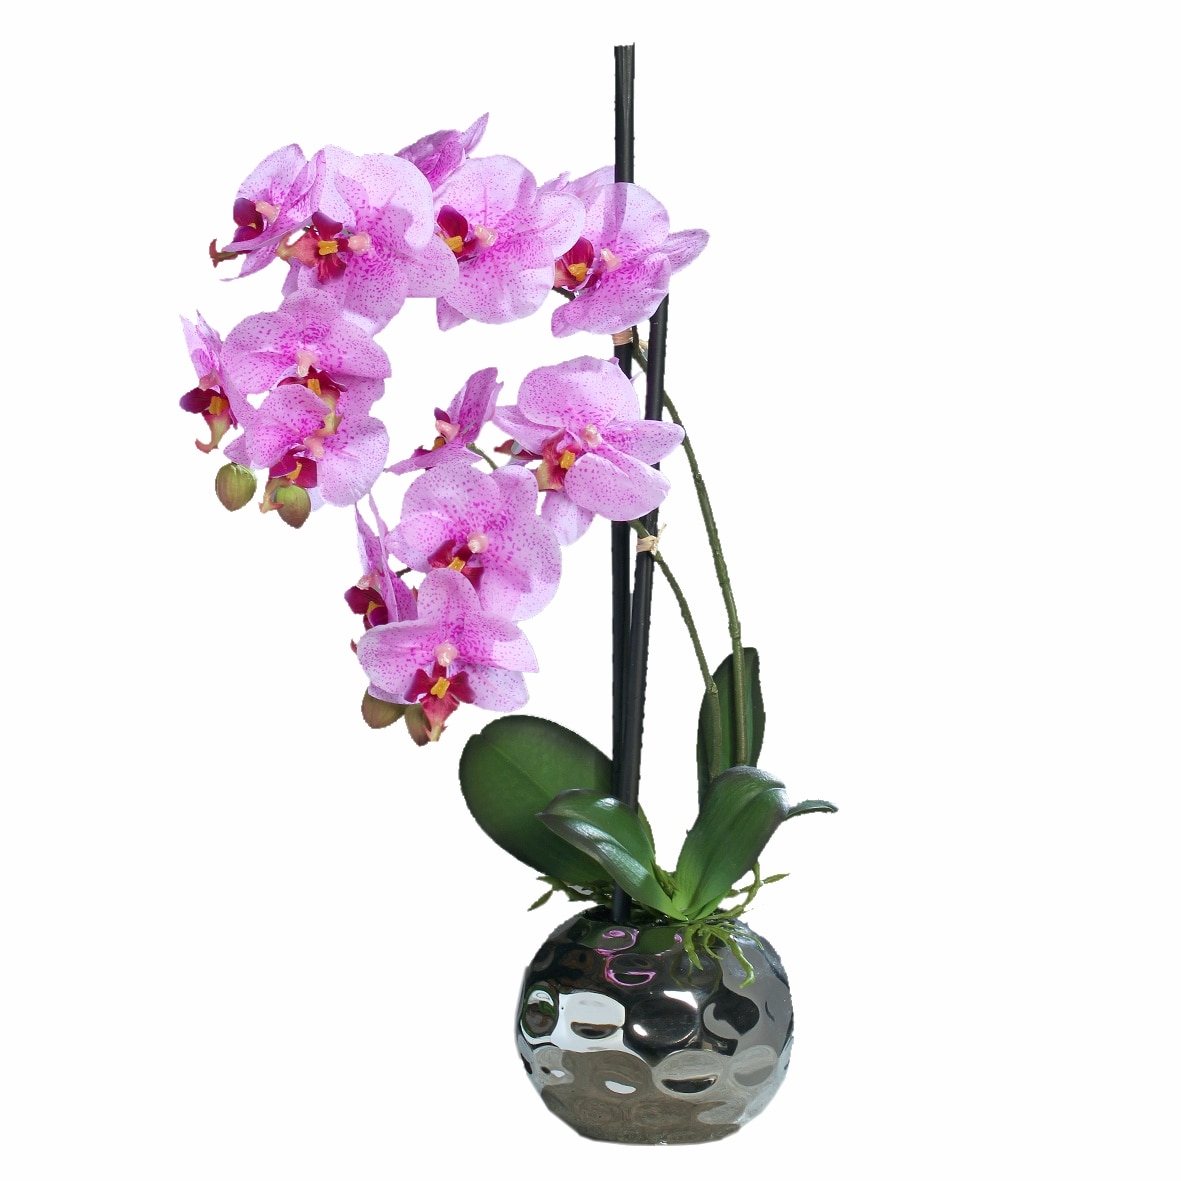 Орхидея в горшке купить в самаре. Орхидея в горшке. Орхидея розовая в горшке. Орхидея искусственная в керамическом горшке. Орхидея в горшке с розовыми цветами.